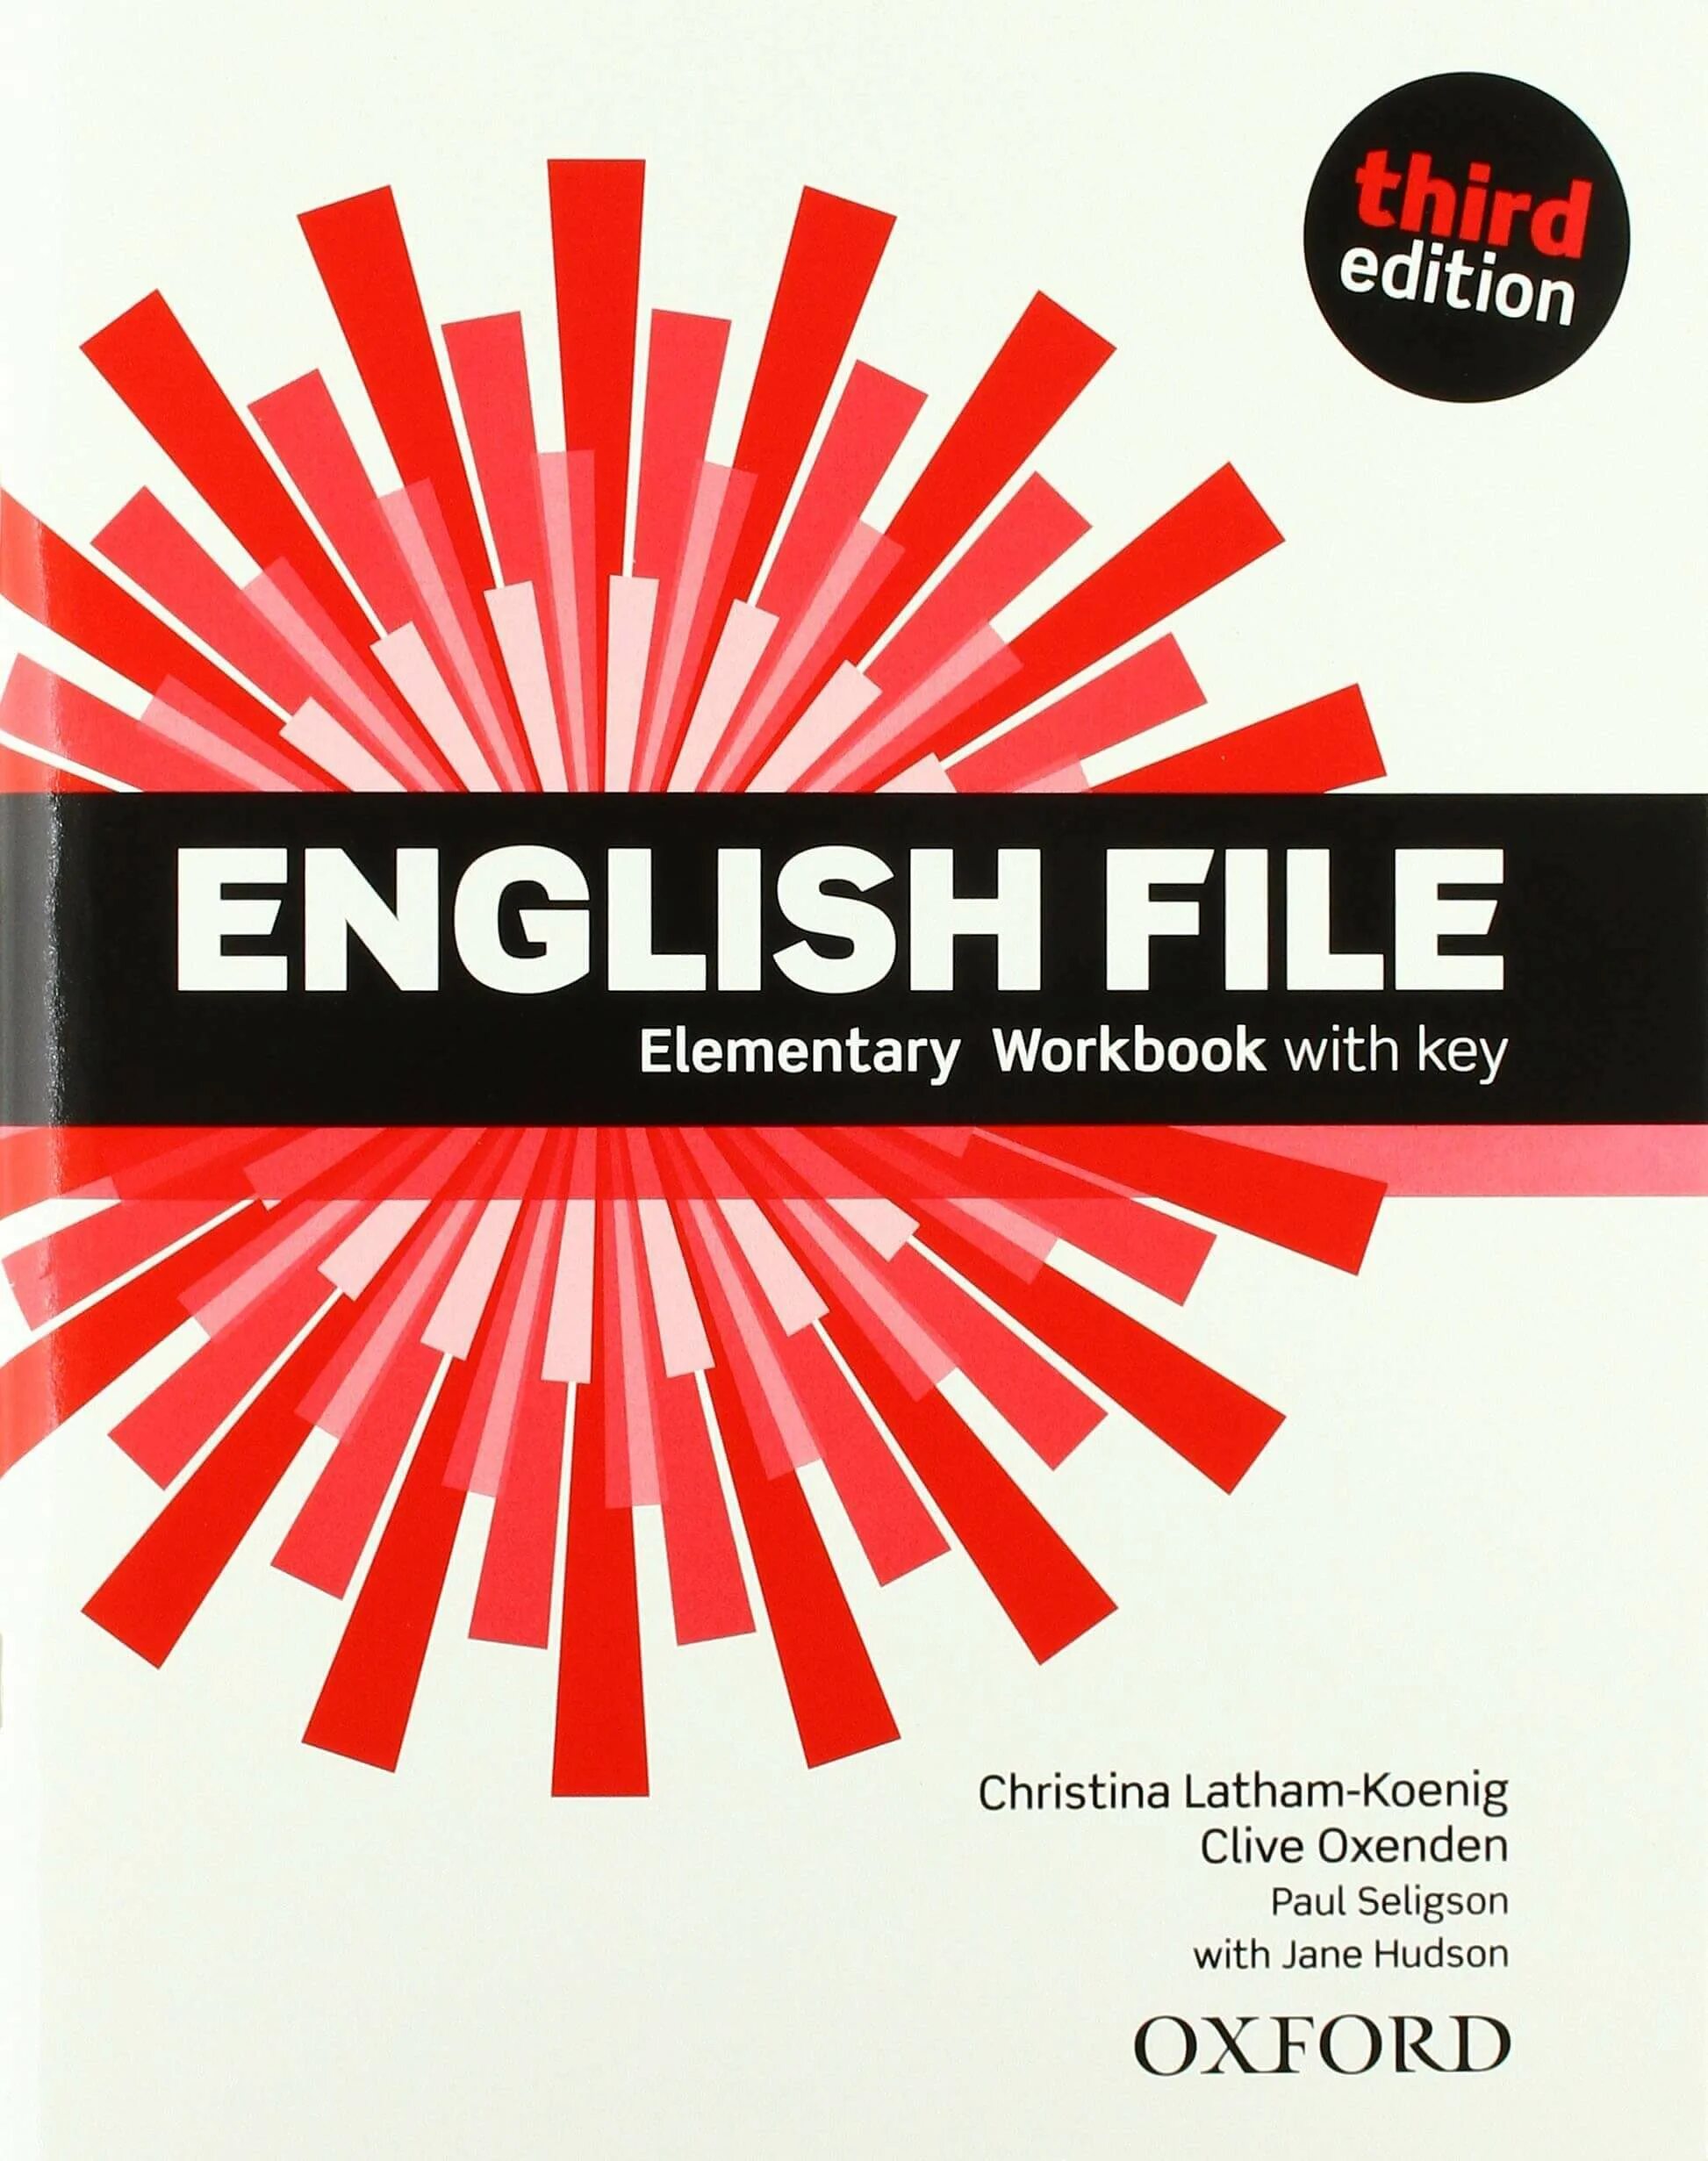 Английский Оксфорд учебник English file. Инглиш файл элементари 3 издание. English file Christina Latham Koenig third Edition.